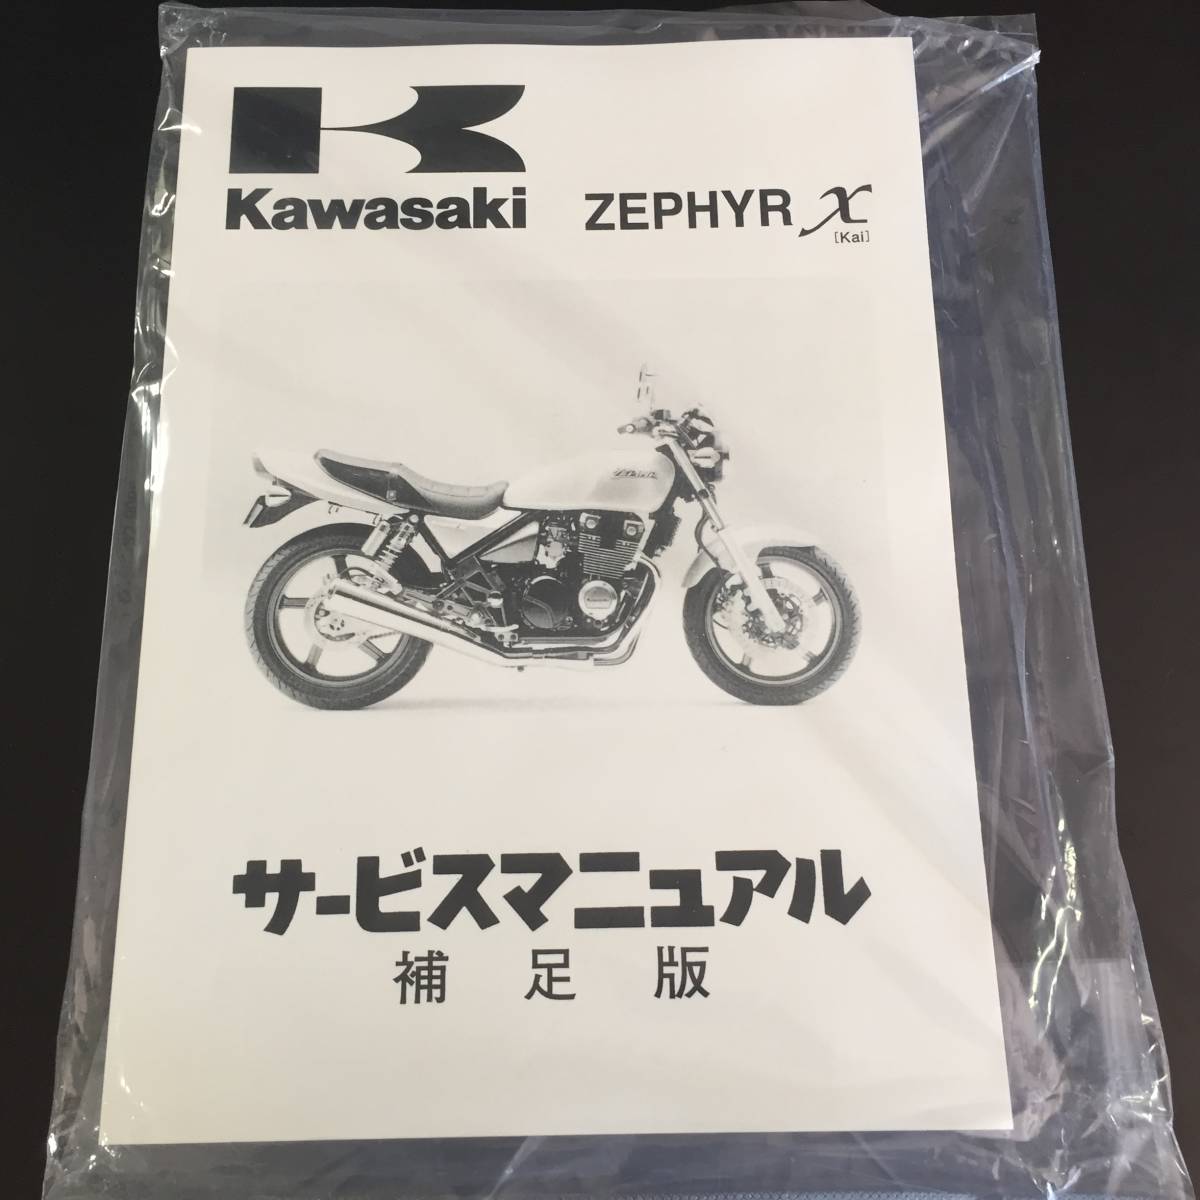  Kawasaki оригинальный Zephyr 400χ руководство по обслуживанию дополнение версия стоимость доставки 210 иен новый товар Zephyr 400 kai 